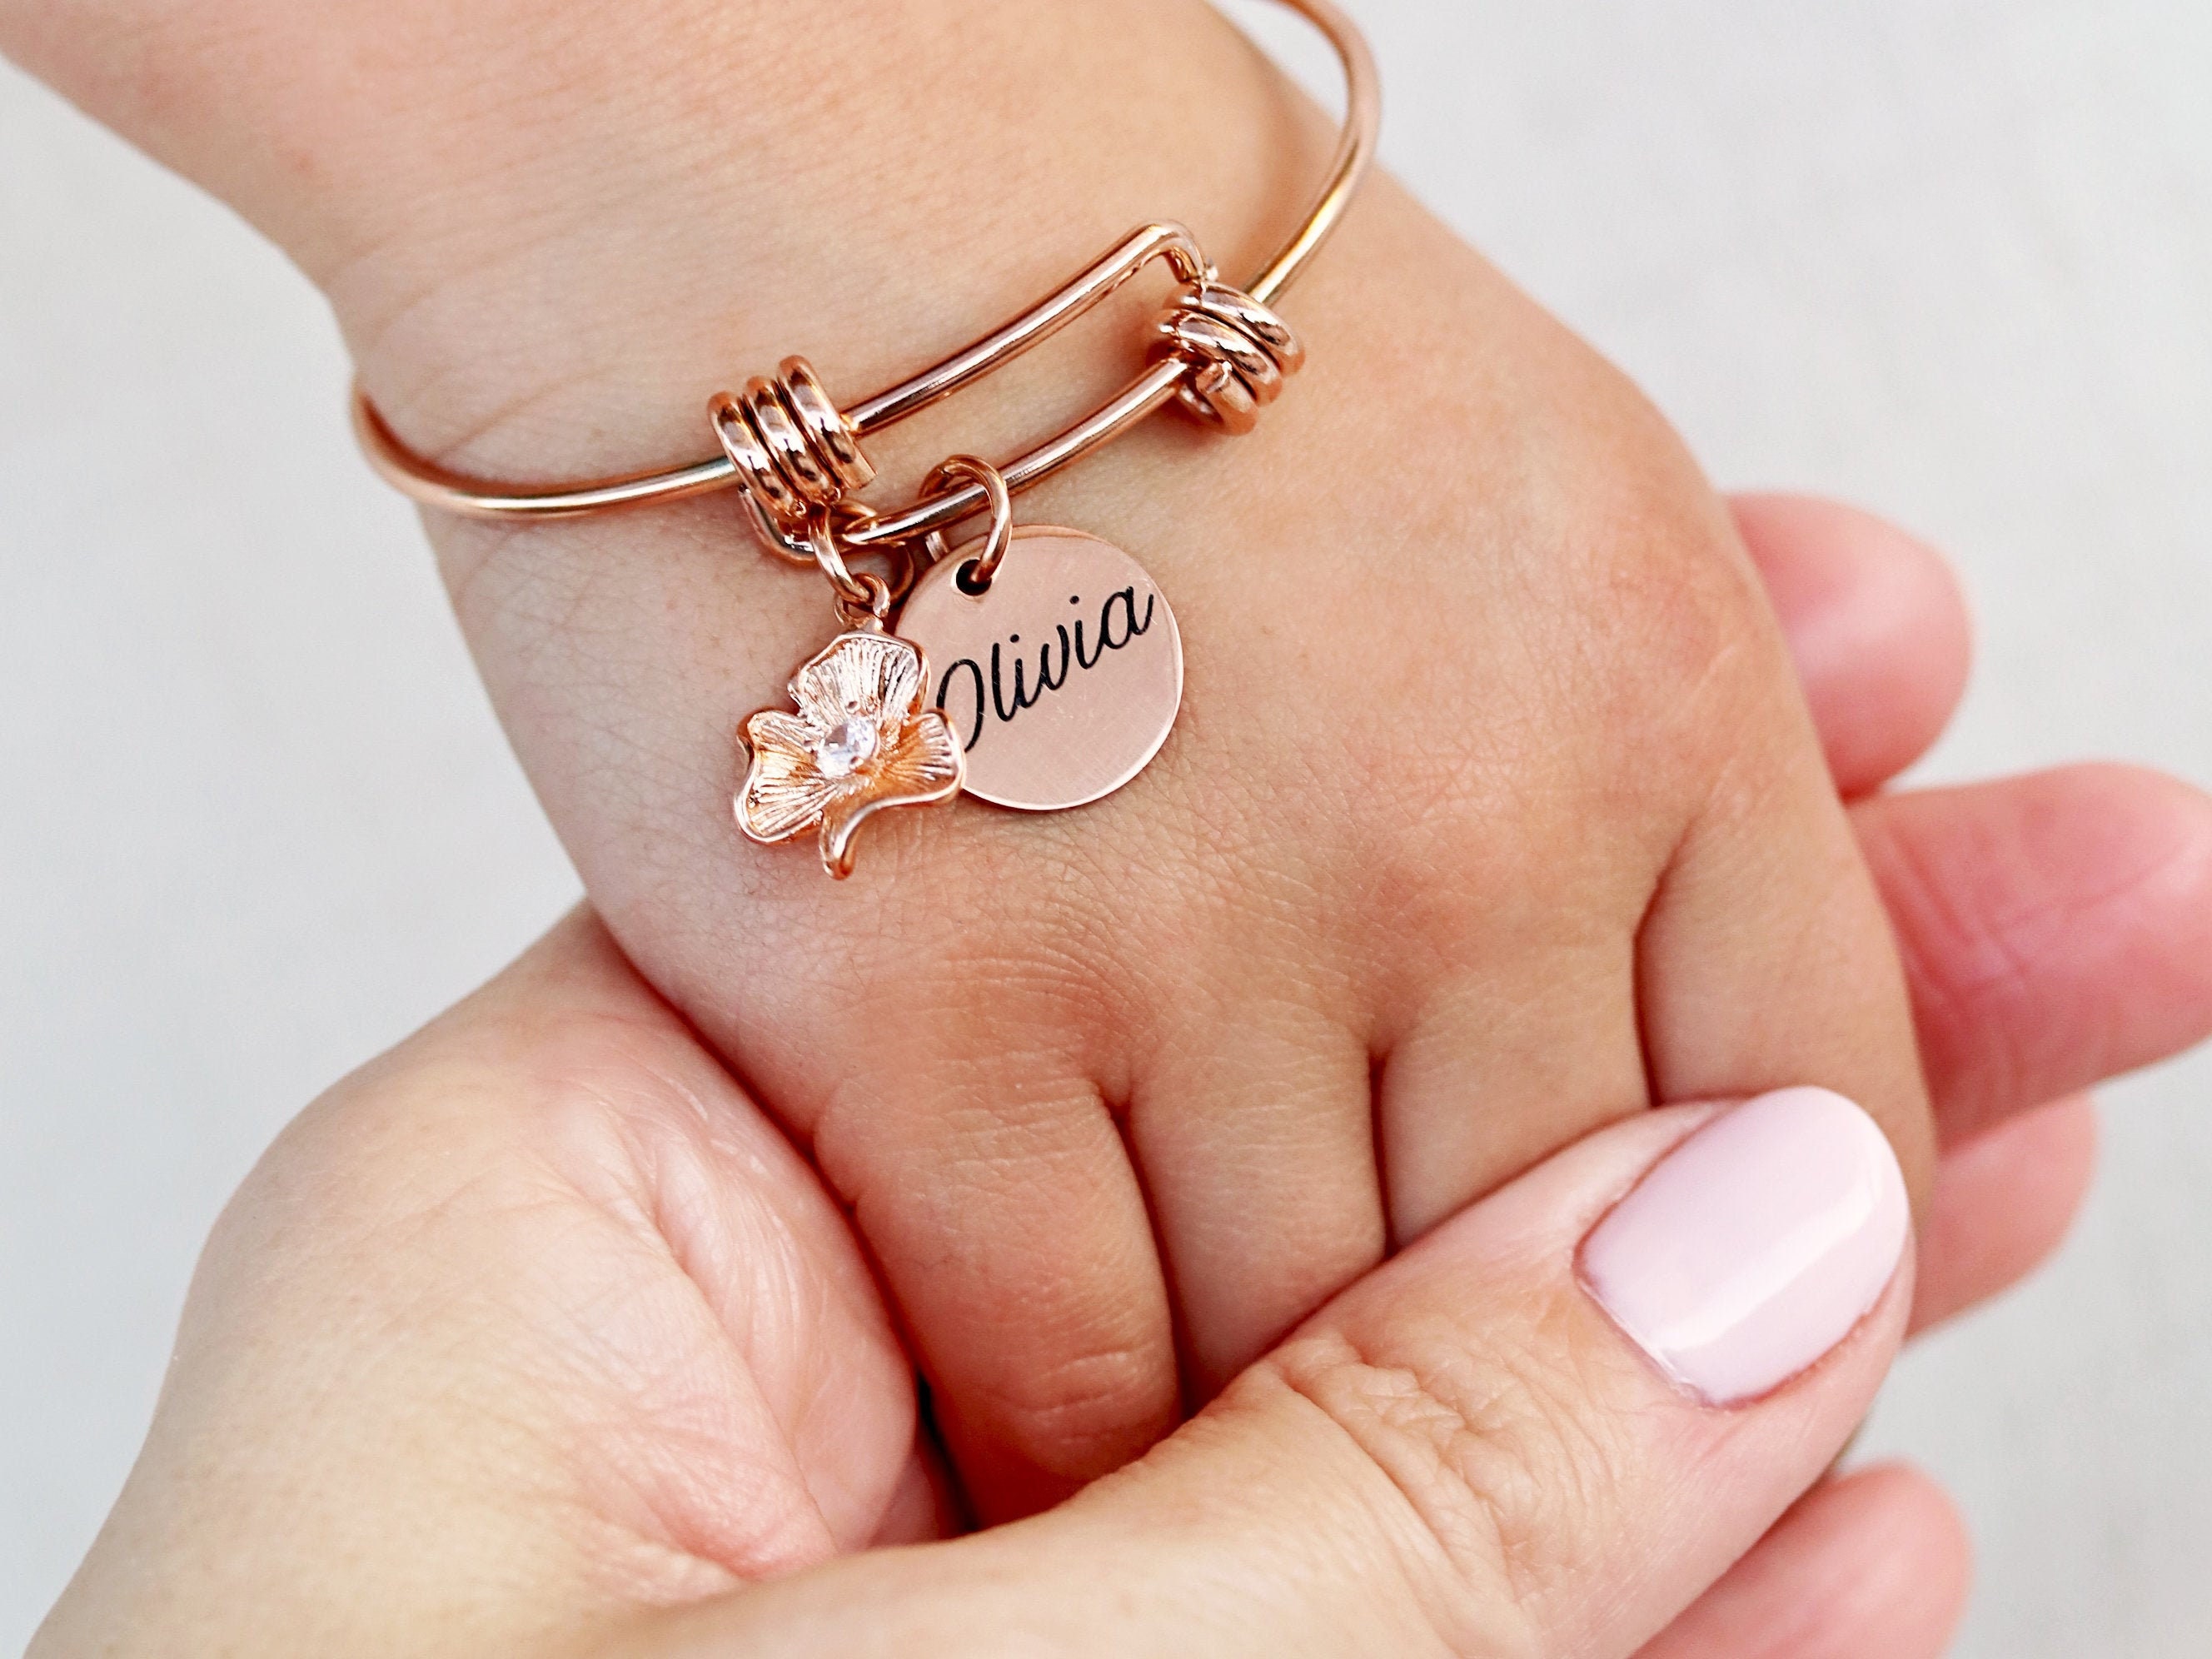 Baby Crystal Bracelet,Charm Bracelet,Name Bracelet for Flower Girl Birthday Gift 